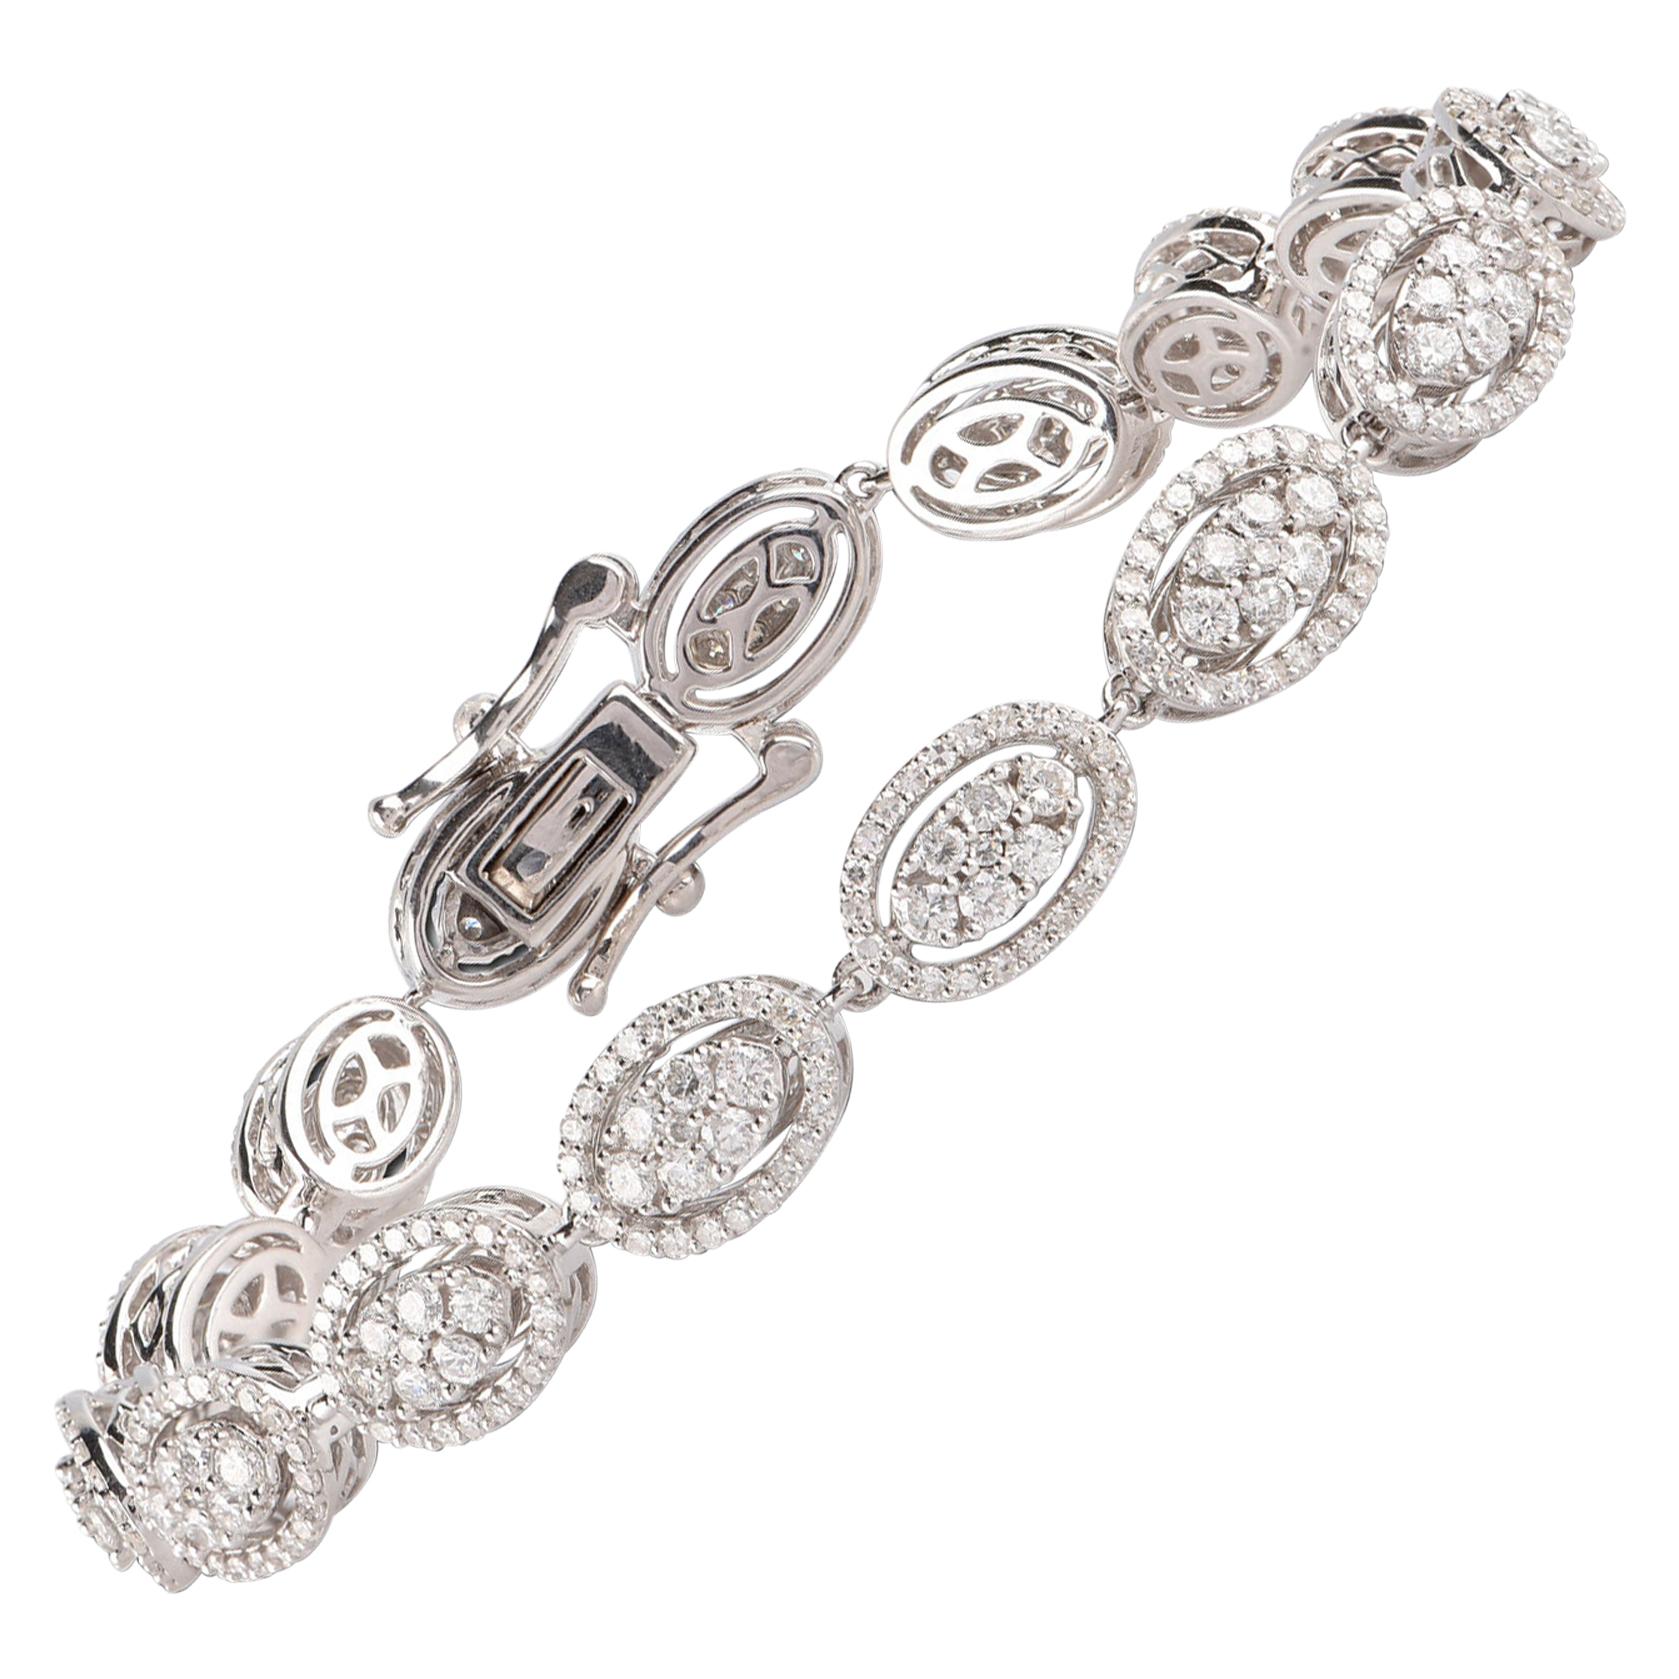 Ce bracelet à maillons en diamants est un ajout gracieux à sa garde-robe et apporte la touche d'éclat parfaite à son look. Whiting est orné de 435 diamants de taille brillant, élégamment montés en serti clos et façonnés en or blanc 14 carats. Les